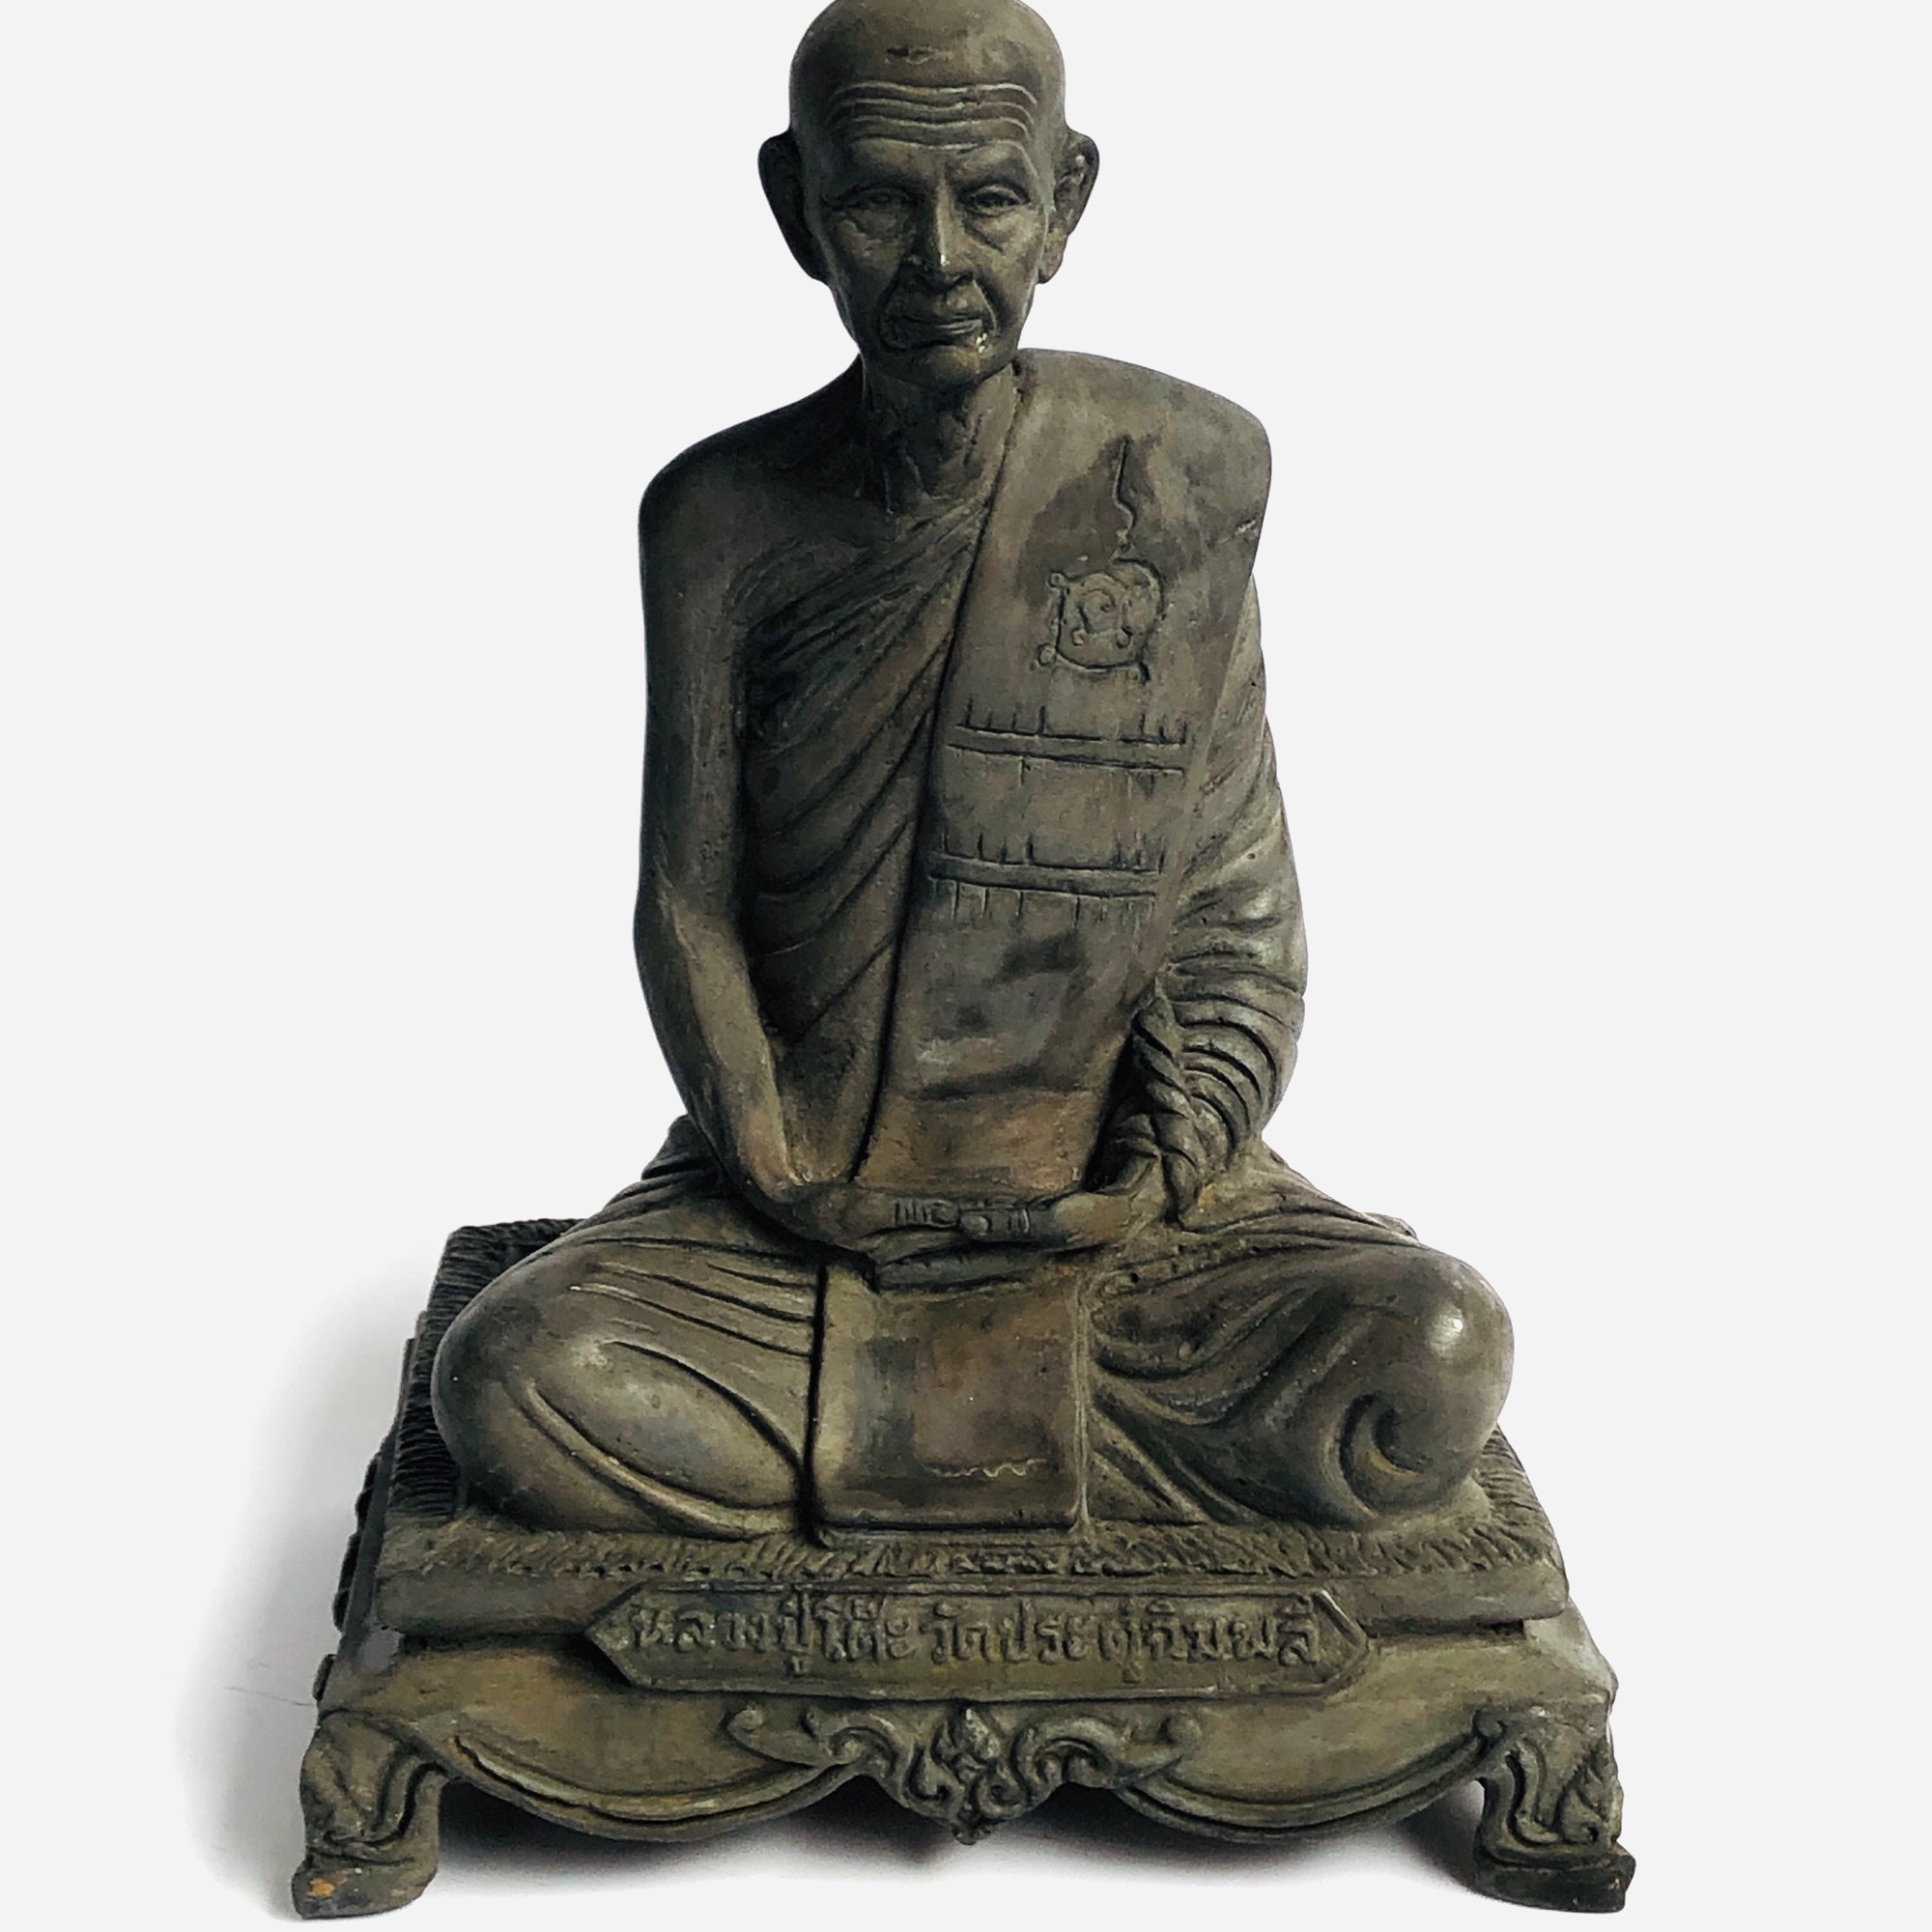 พระพุทธรูป หลวงปู่โต๊ะ วัดประดู่ฉิมพลีธนบุรี พระเกจิชื่อเสียง โด่งดังฝั่งธนบุรี ขนาดกว้าง 15cm สูง 22cm